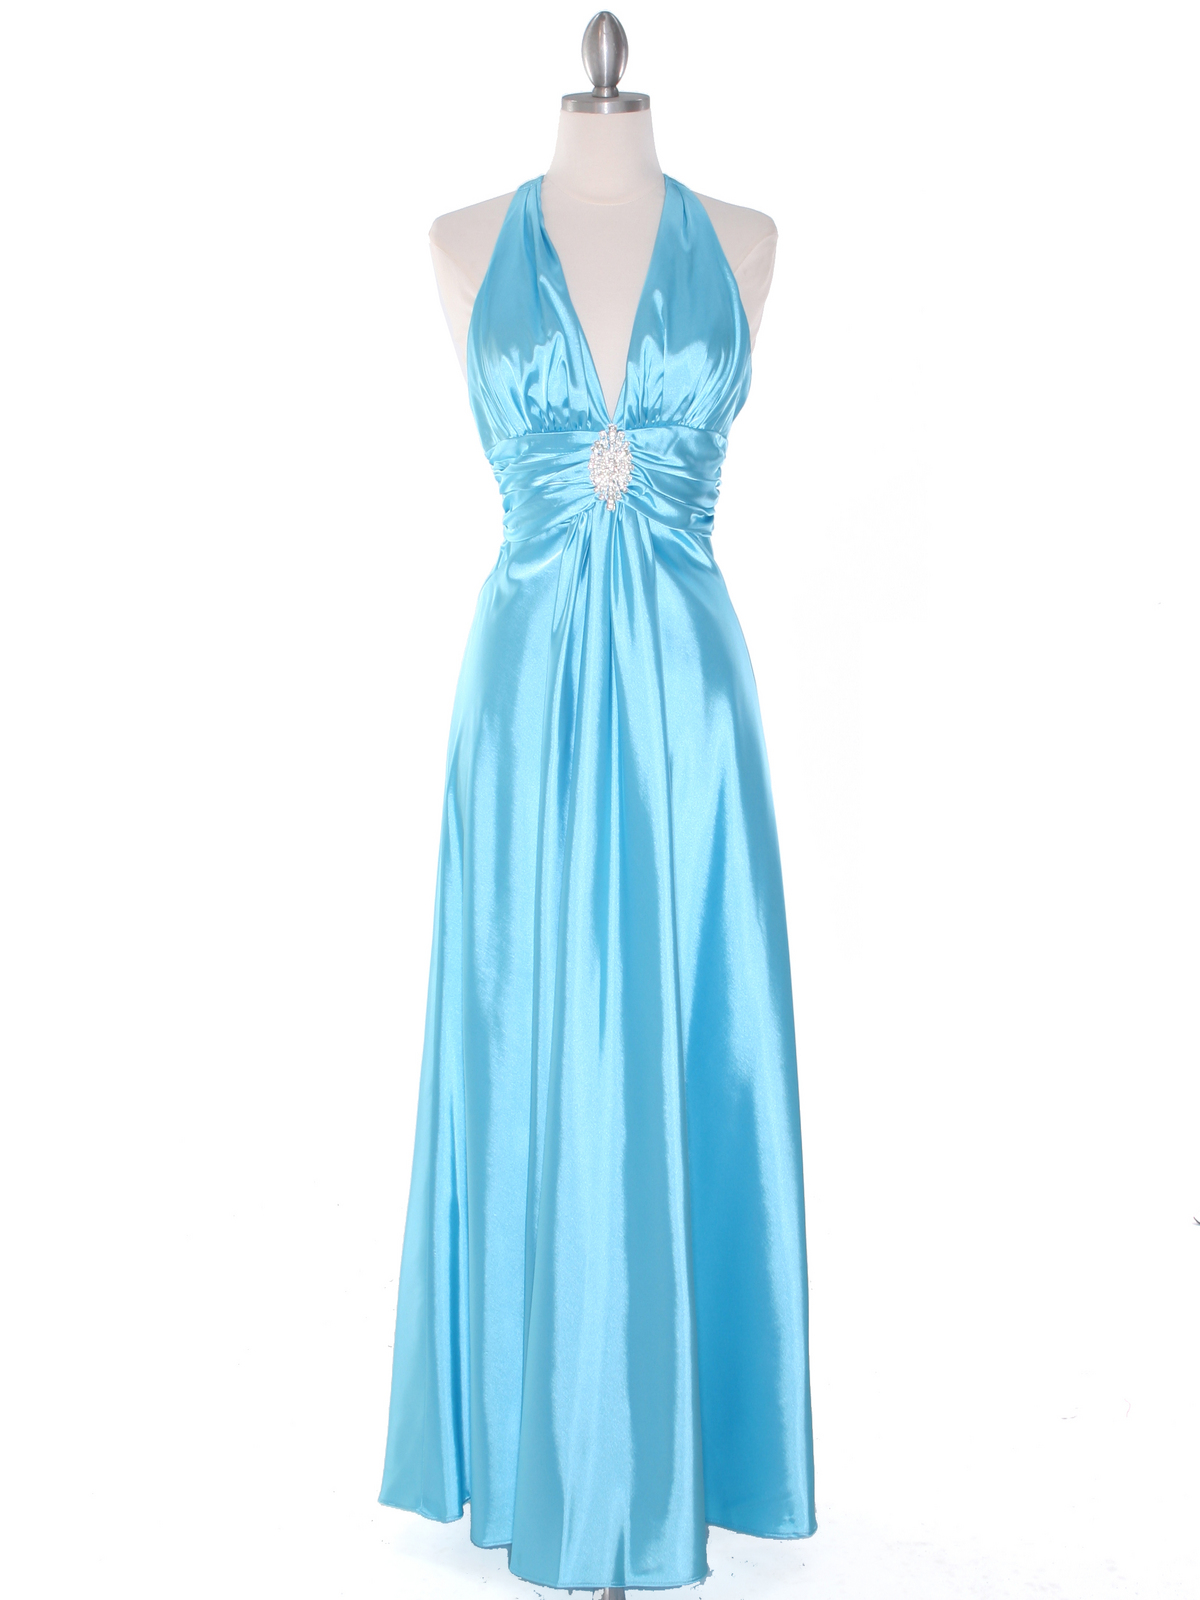 Aqua Satin Halter Evening Dress | Sung Boutique L.A.